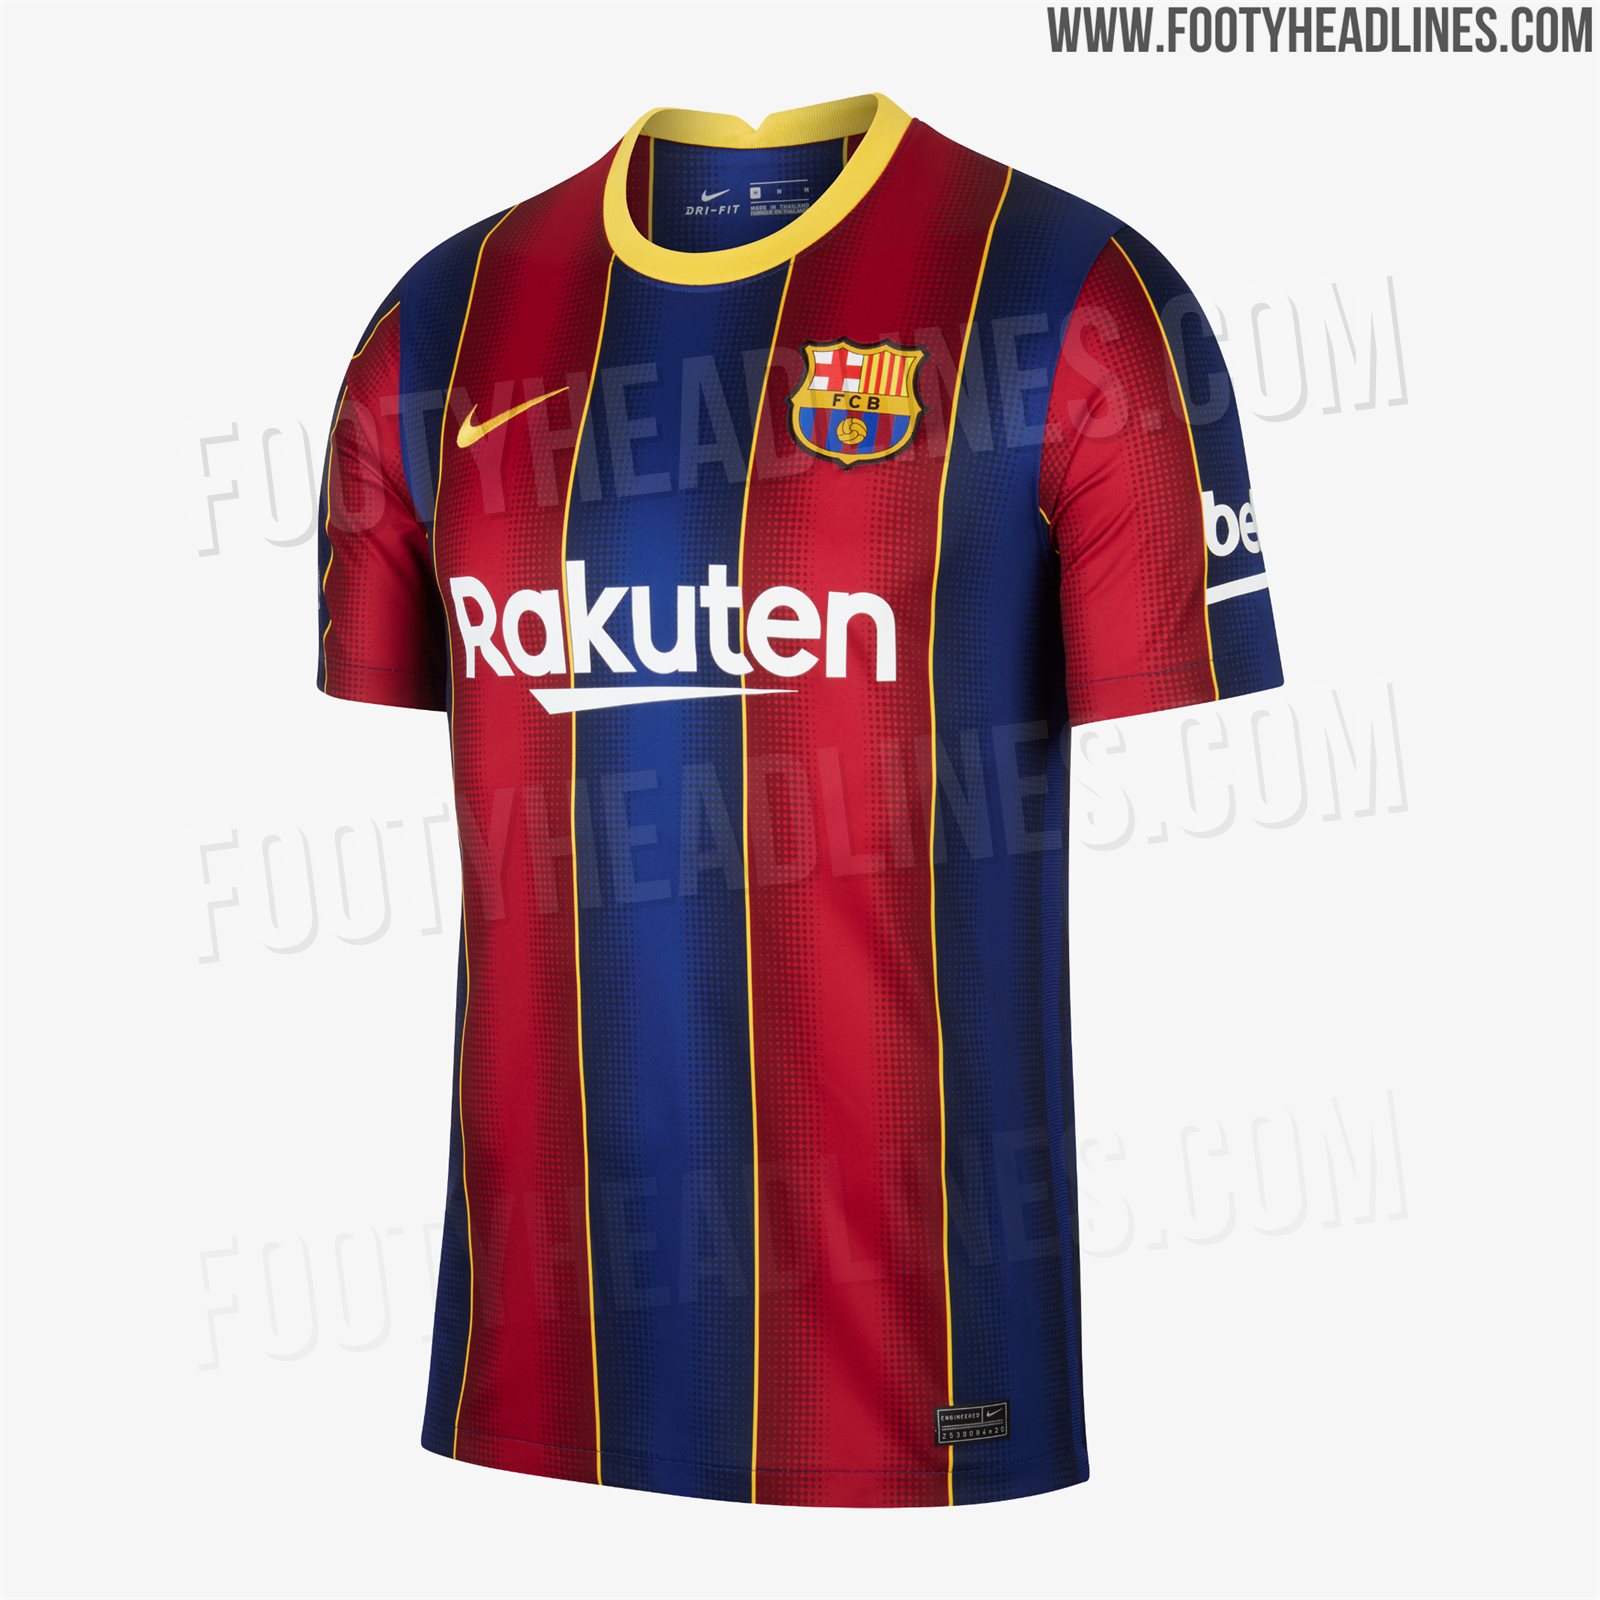 barcelona-20-21-home-kit-2.jpg